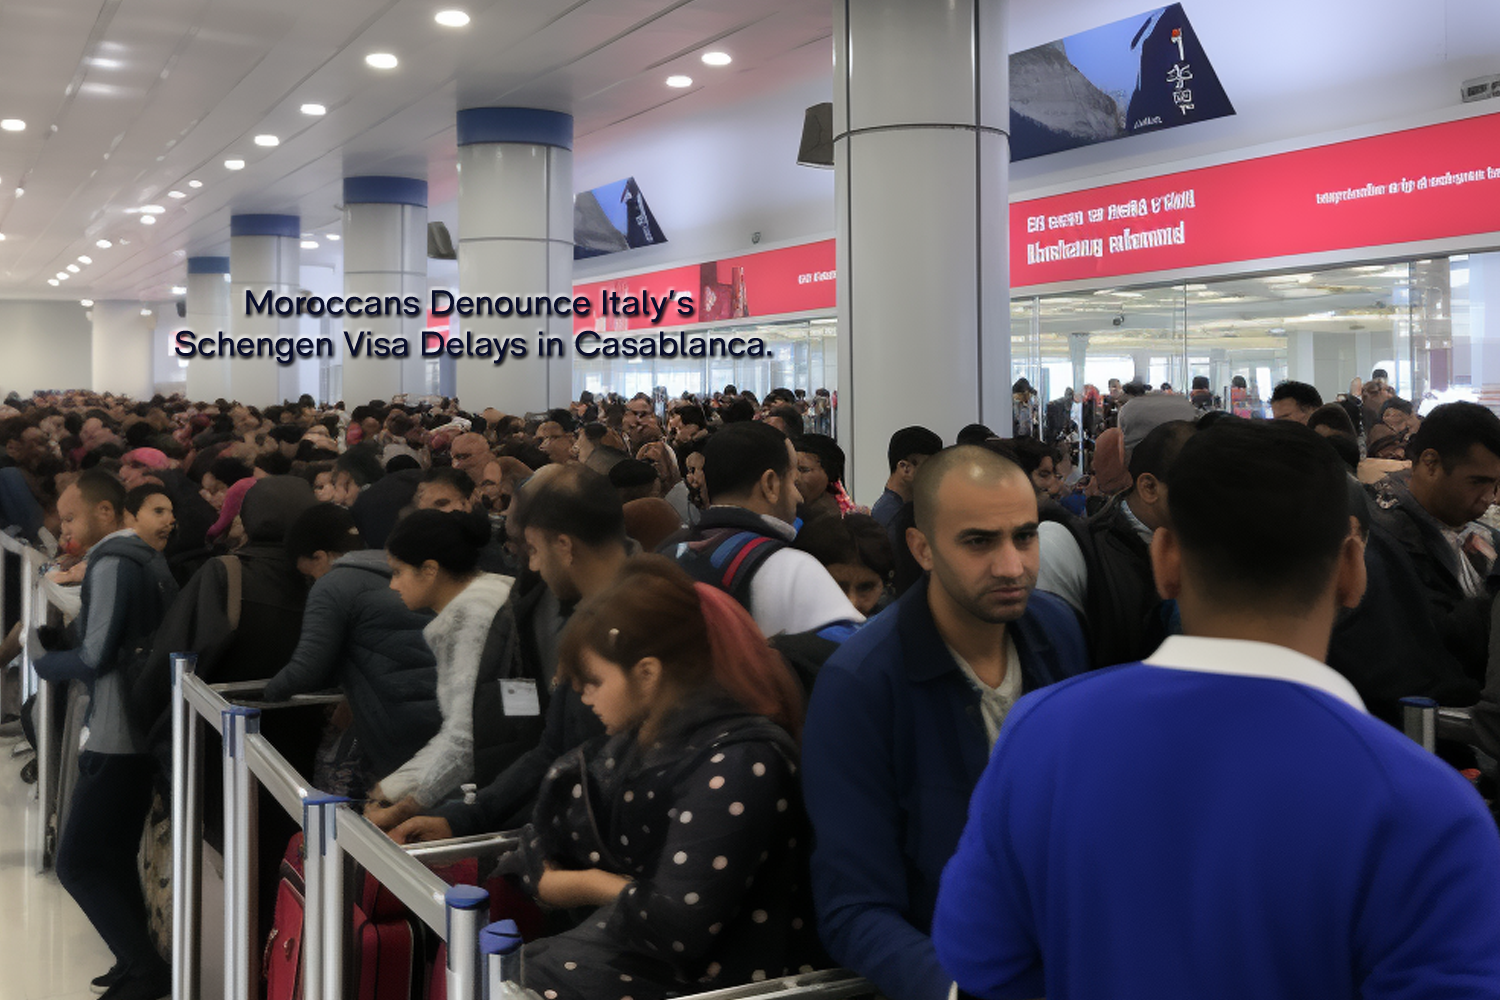 Moroccans Denounce Italy's Schengen Visa Delays in Casablanca.